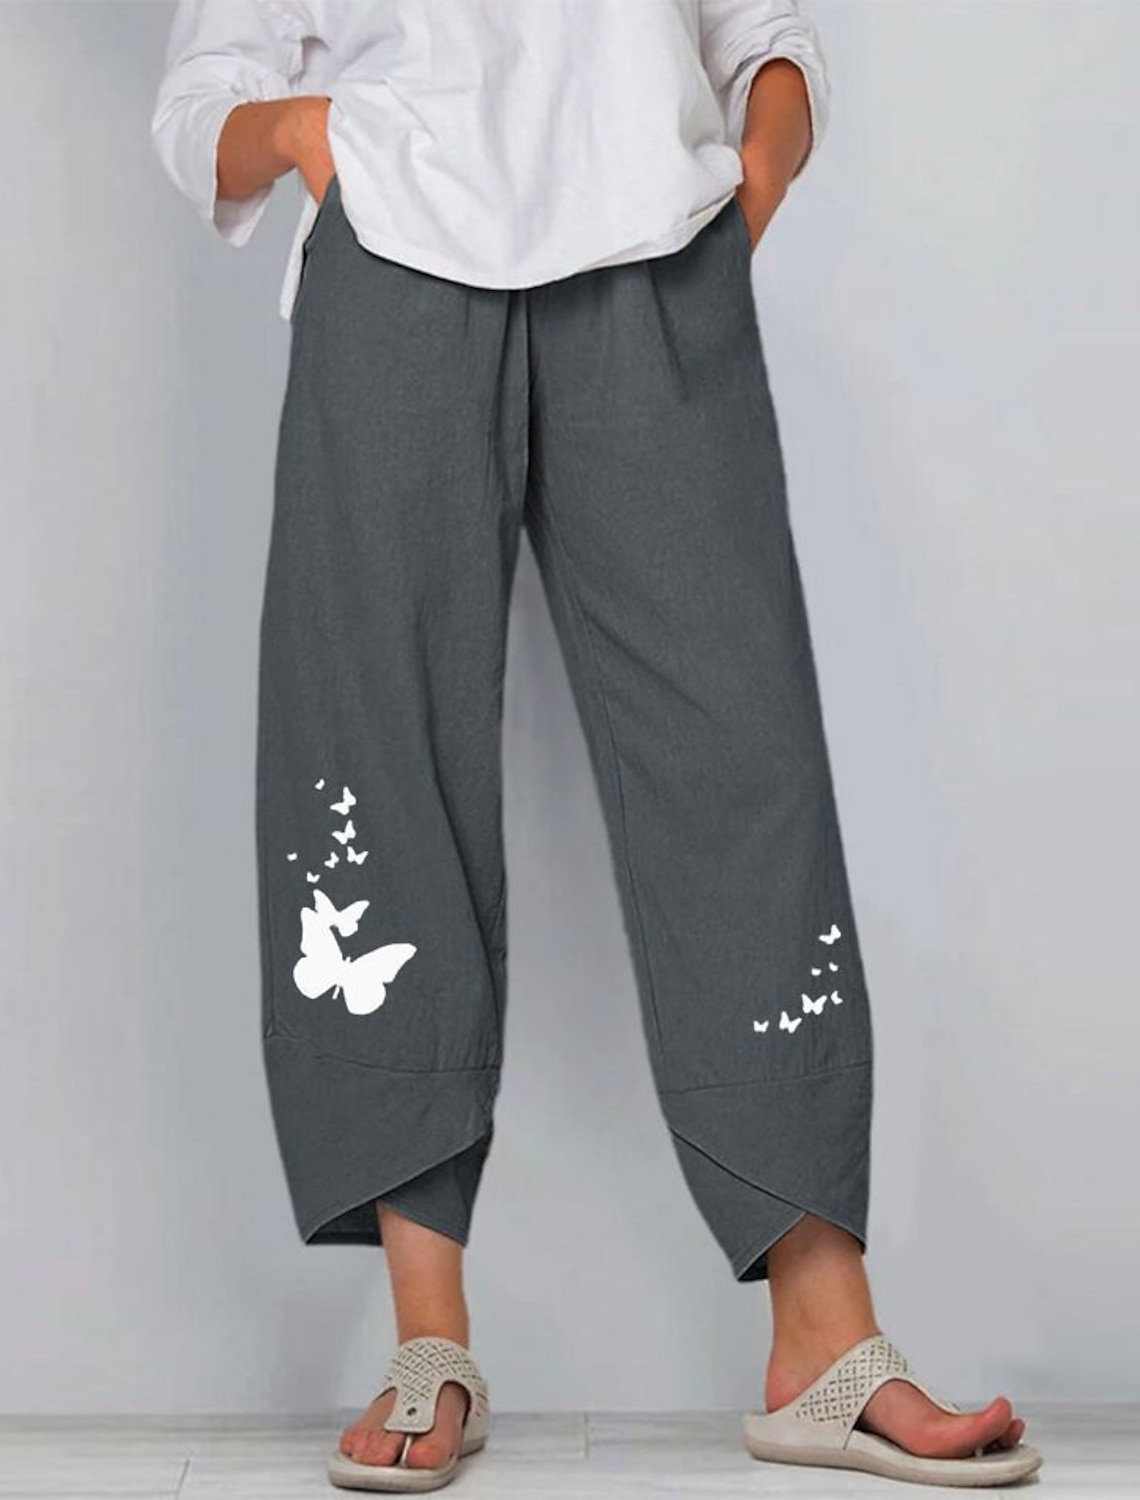 aihihe Womens Boho Floral Print Shorts Comfy Drawstring Casual Elastic Waist Pocketed Shorts Pants Wide Leg Shorts